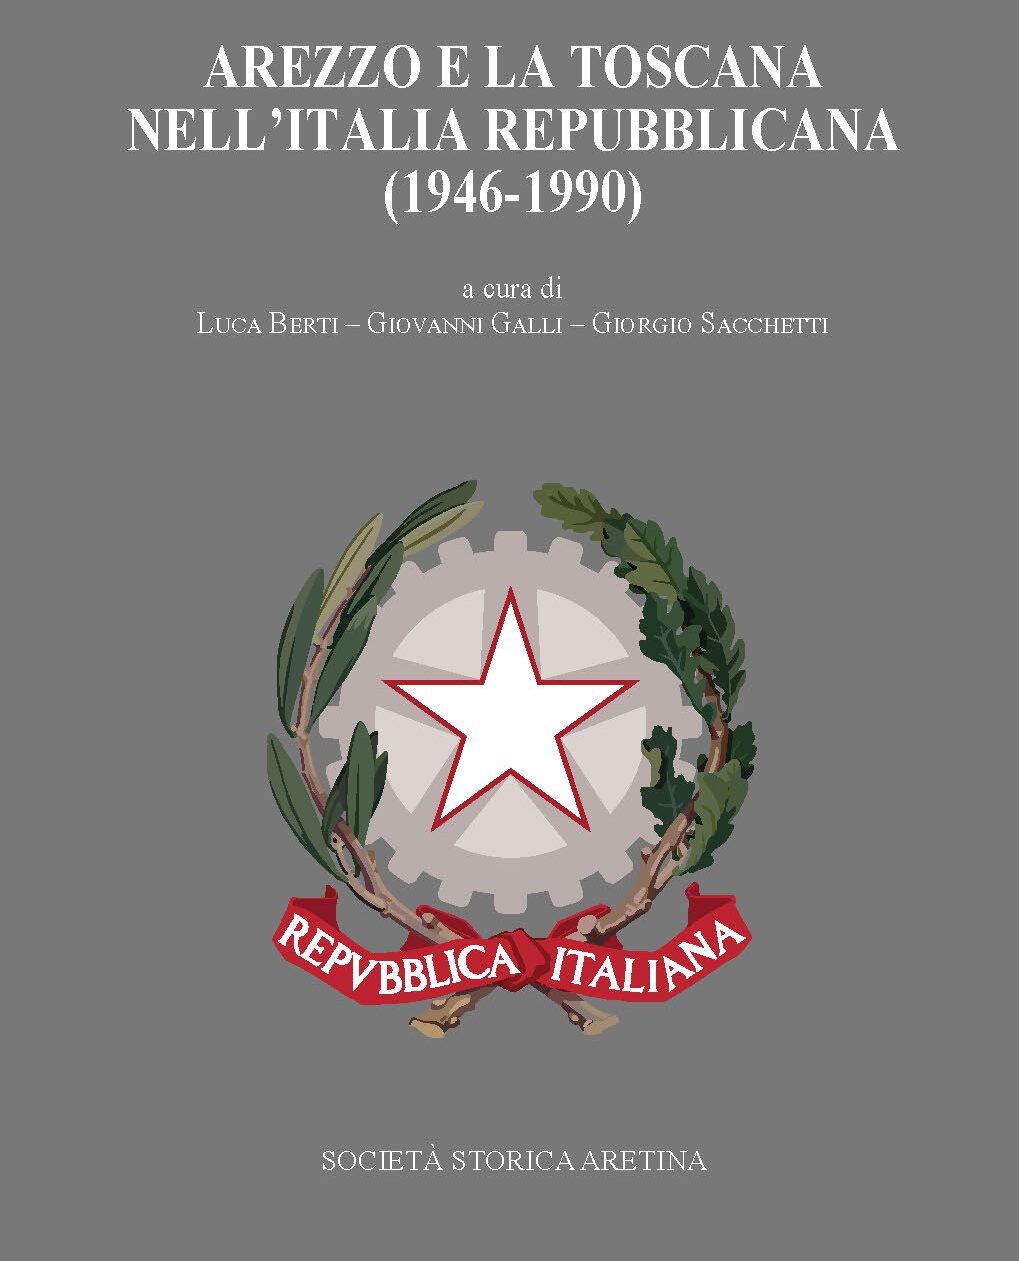 Continua la presentazione del volume “Arezzo e la Toscana nell’Italia repubblicana (1946-1990)”